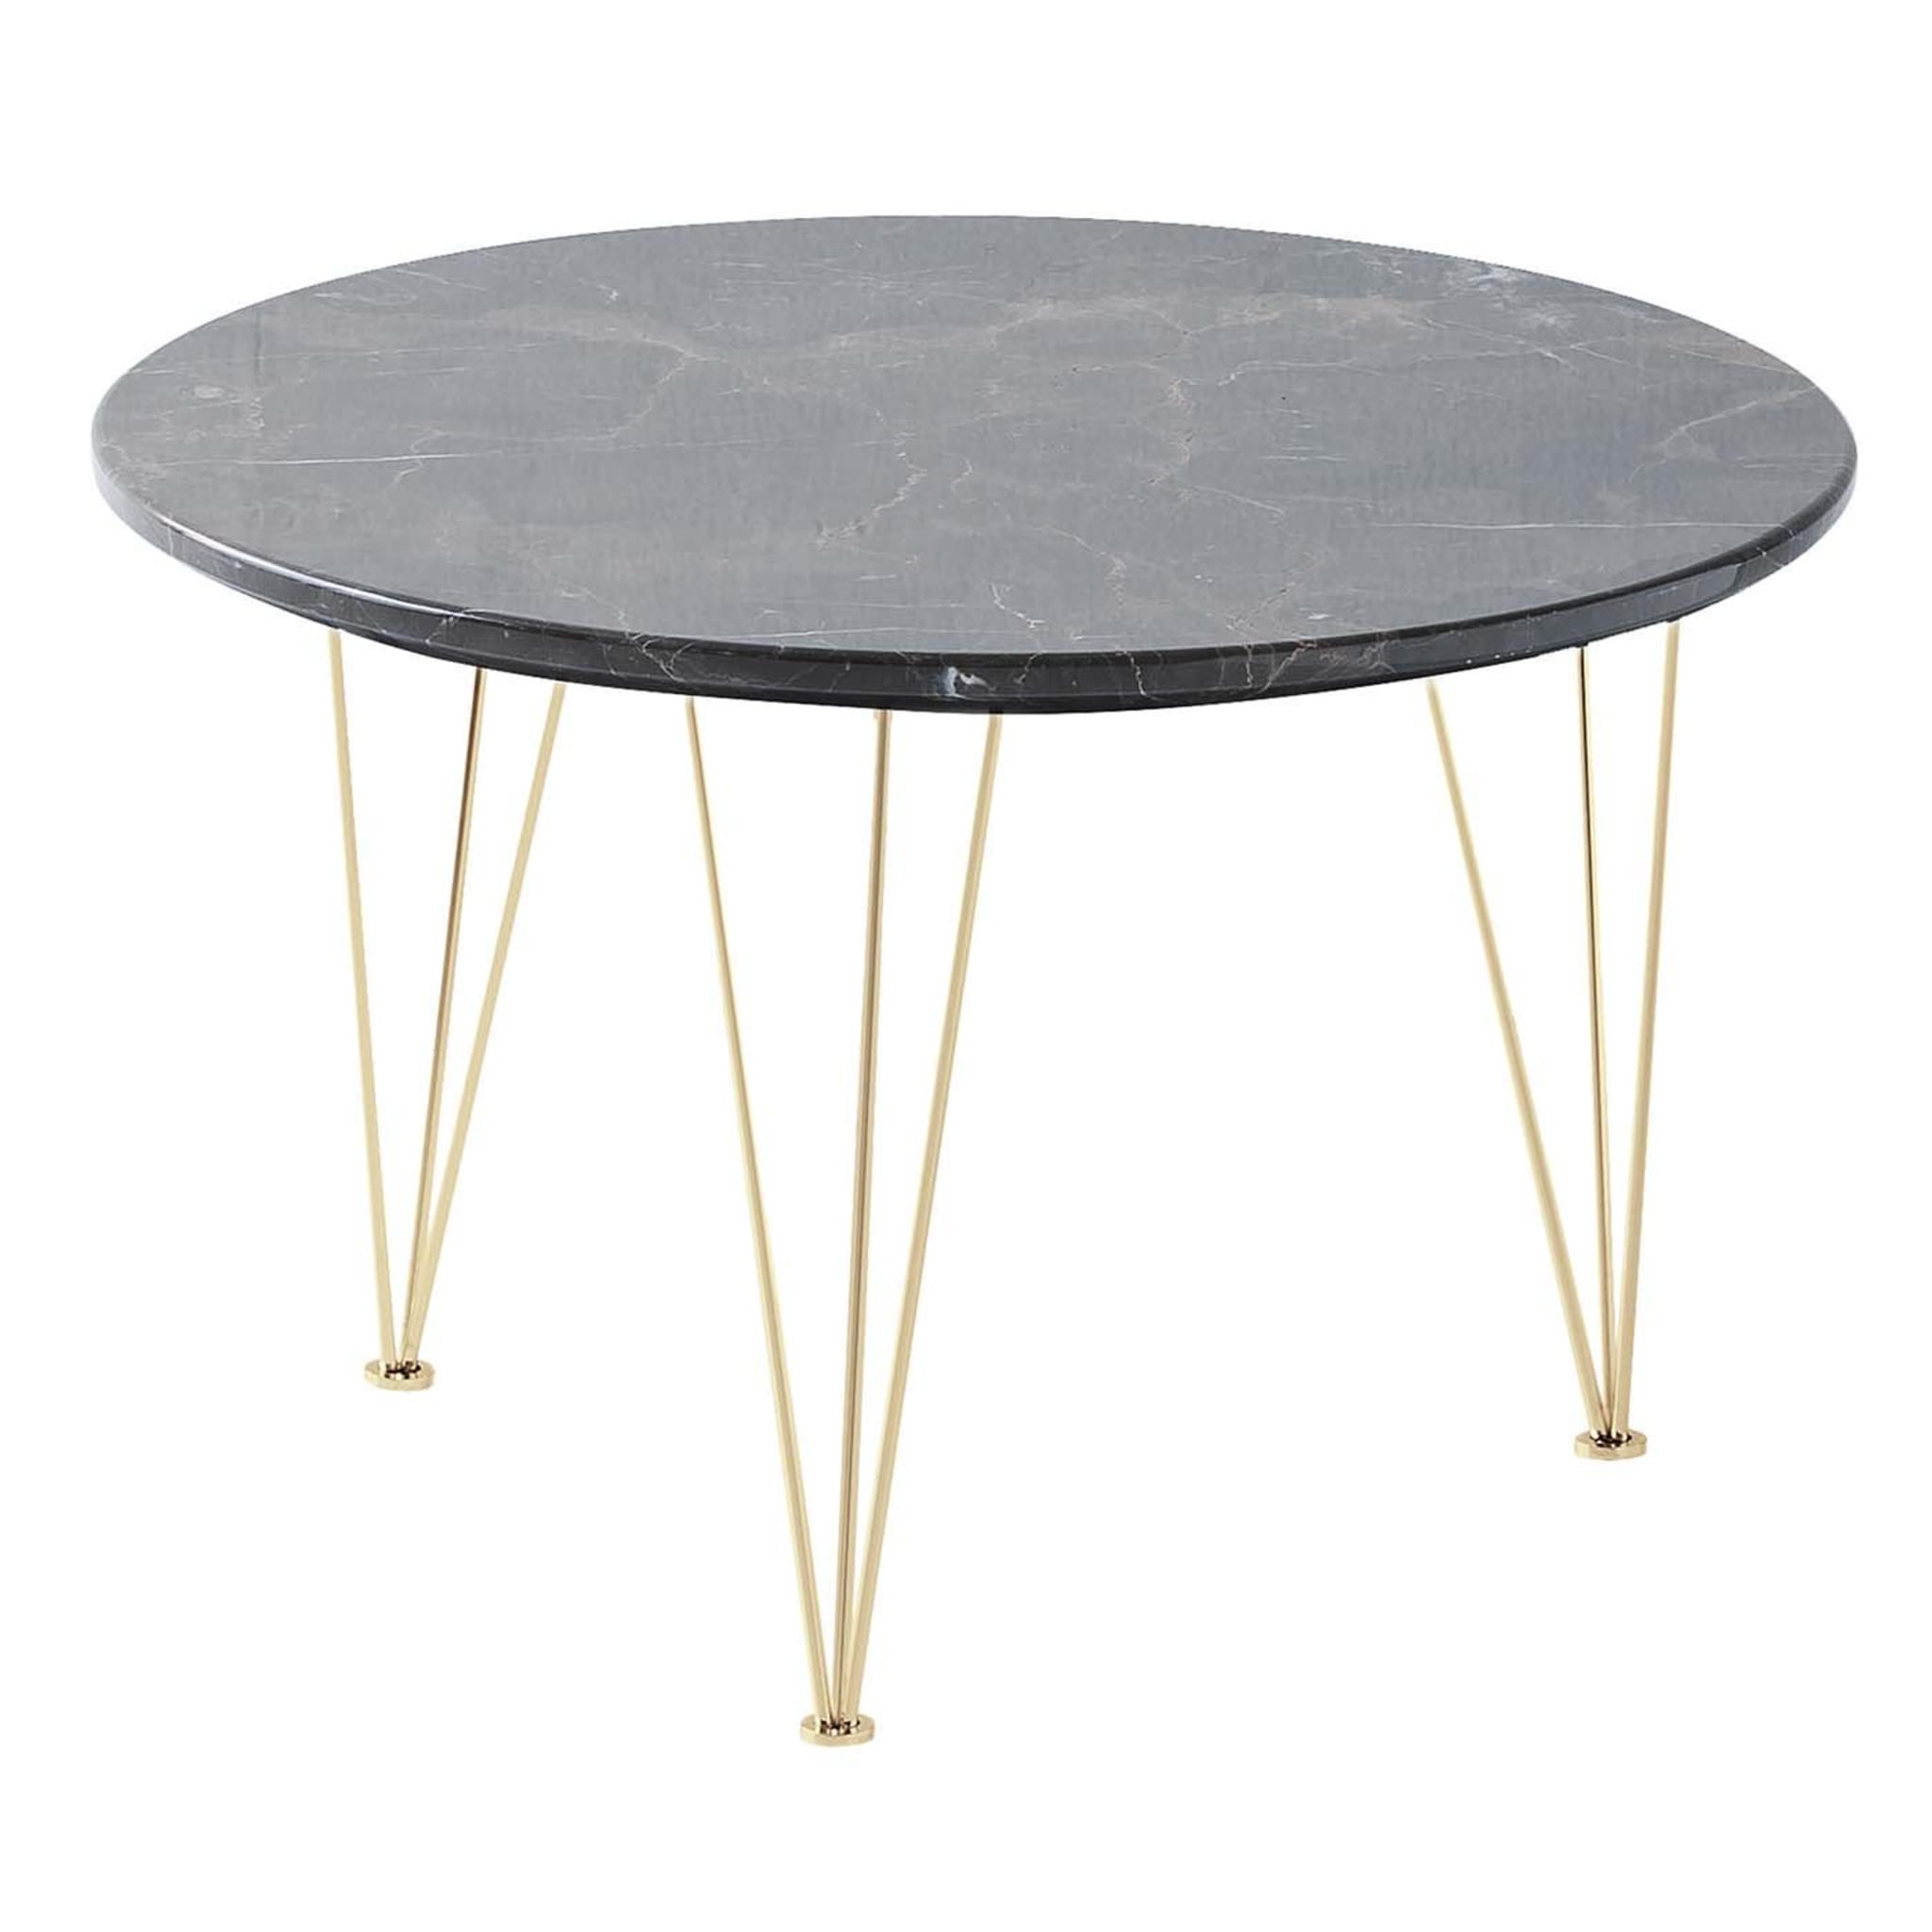 Table d'appoint ronde basse Flamingo avec pieds dorés - Vue principale